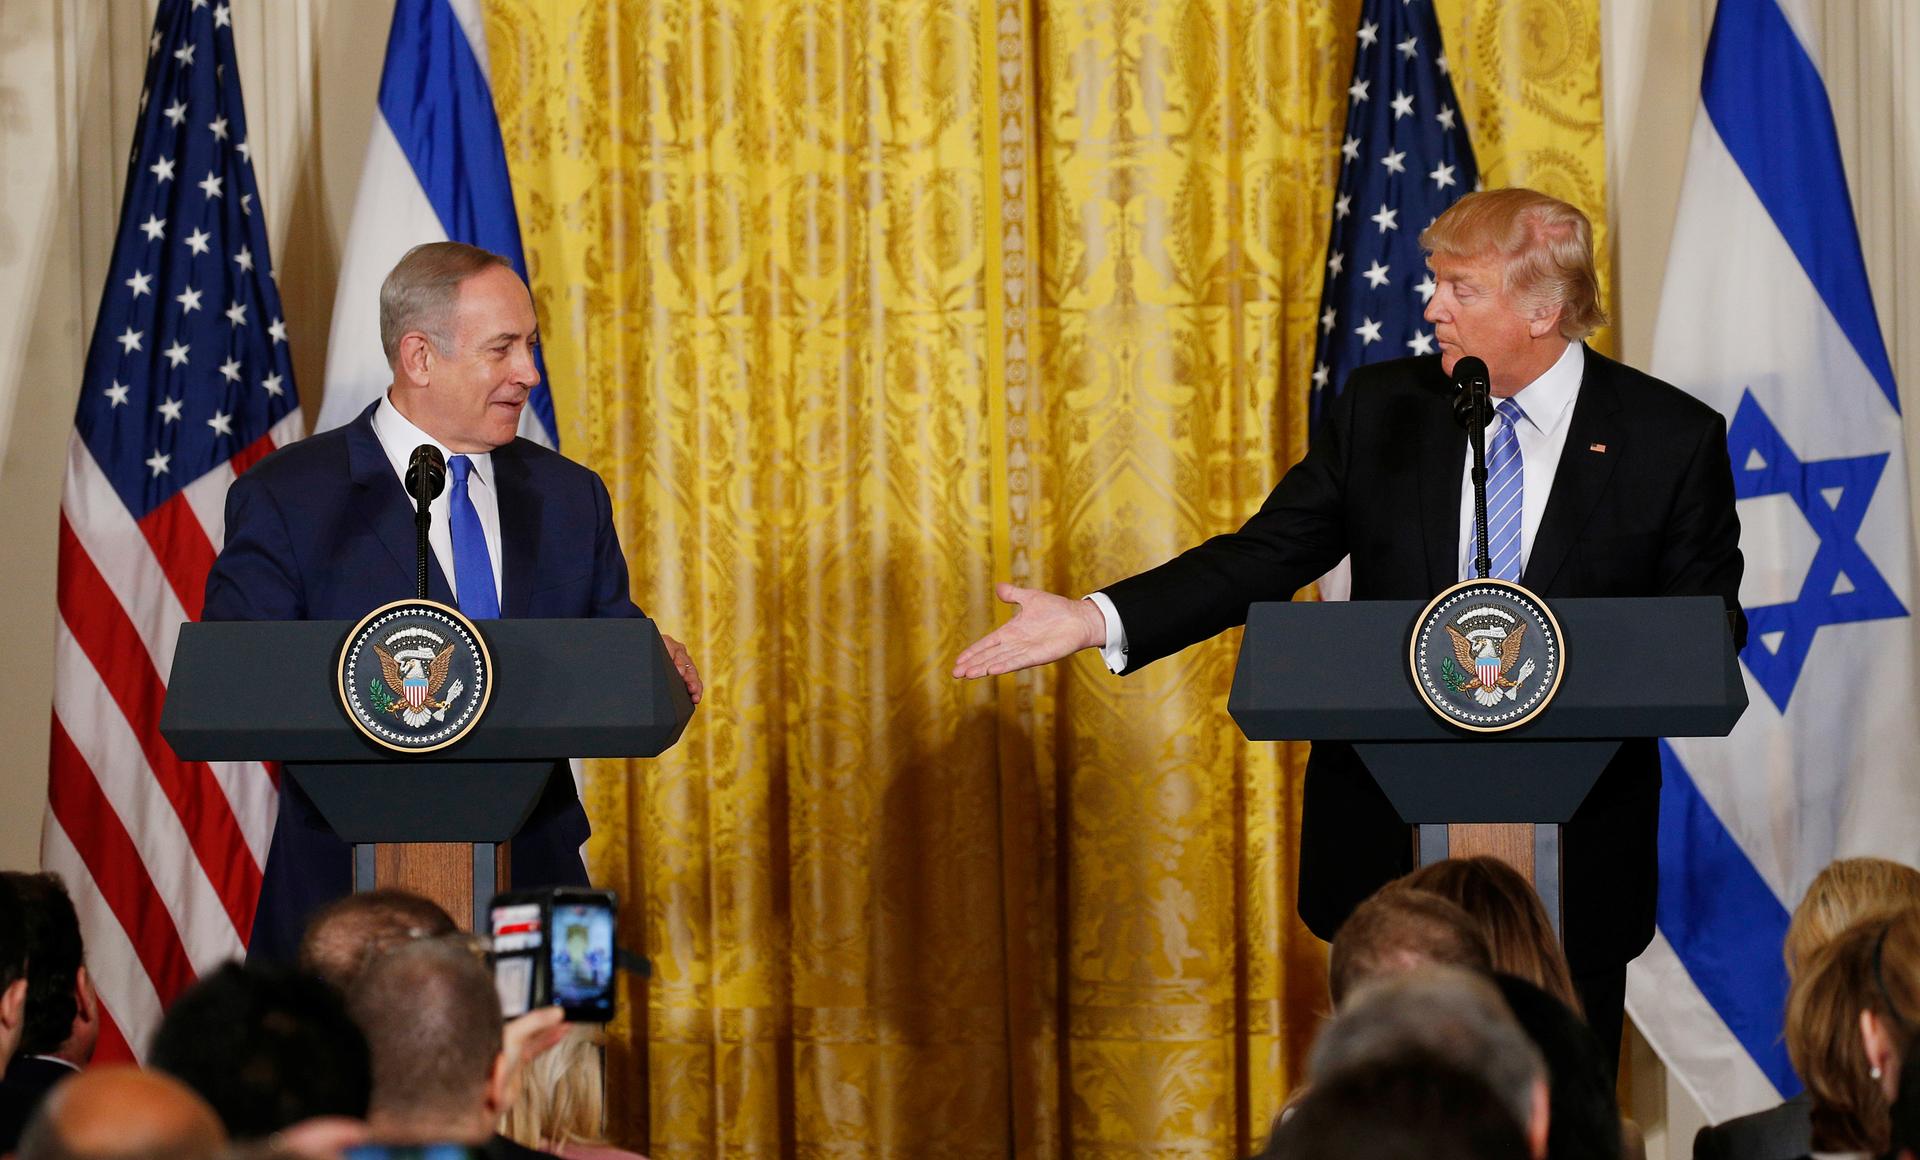 Israeli leader Benjamin Netanyahu and US President Donald Trump shake hands.